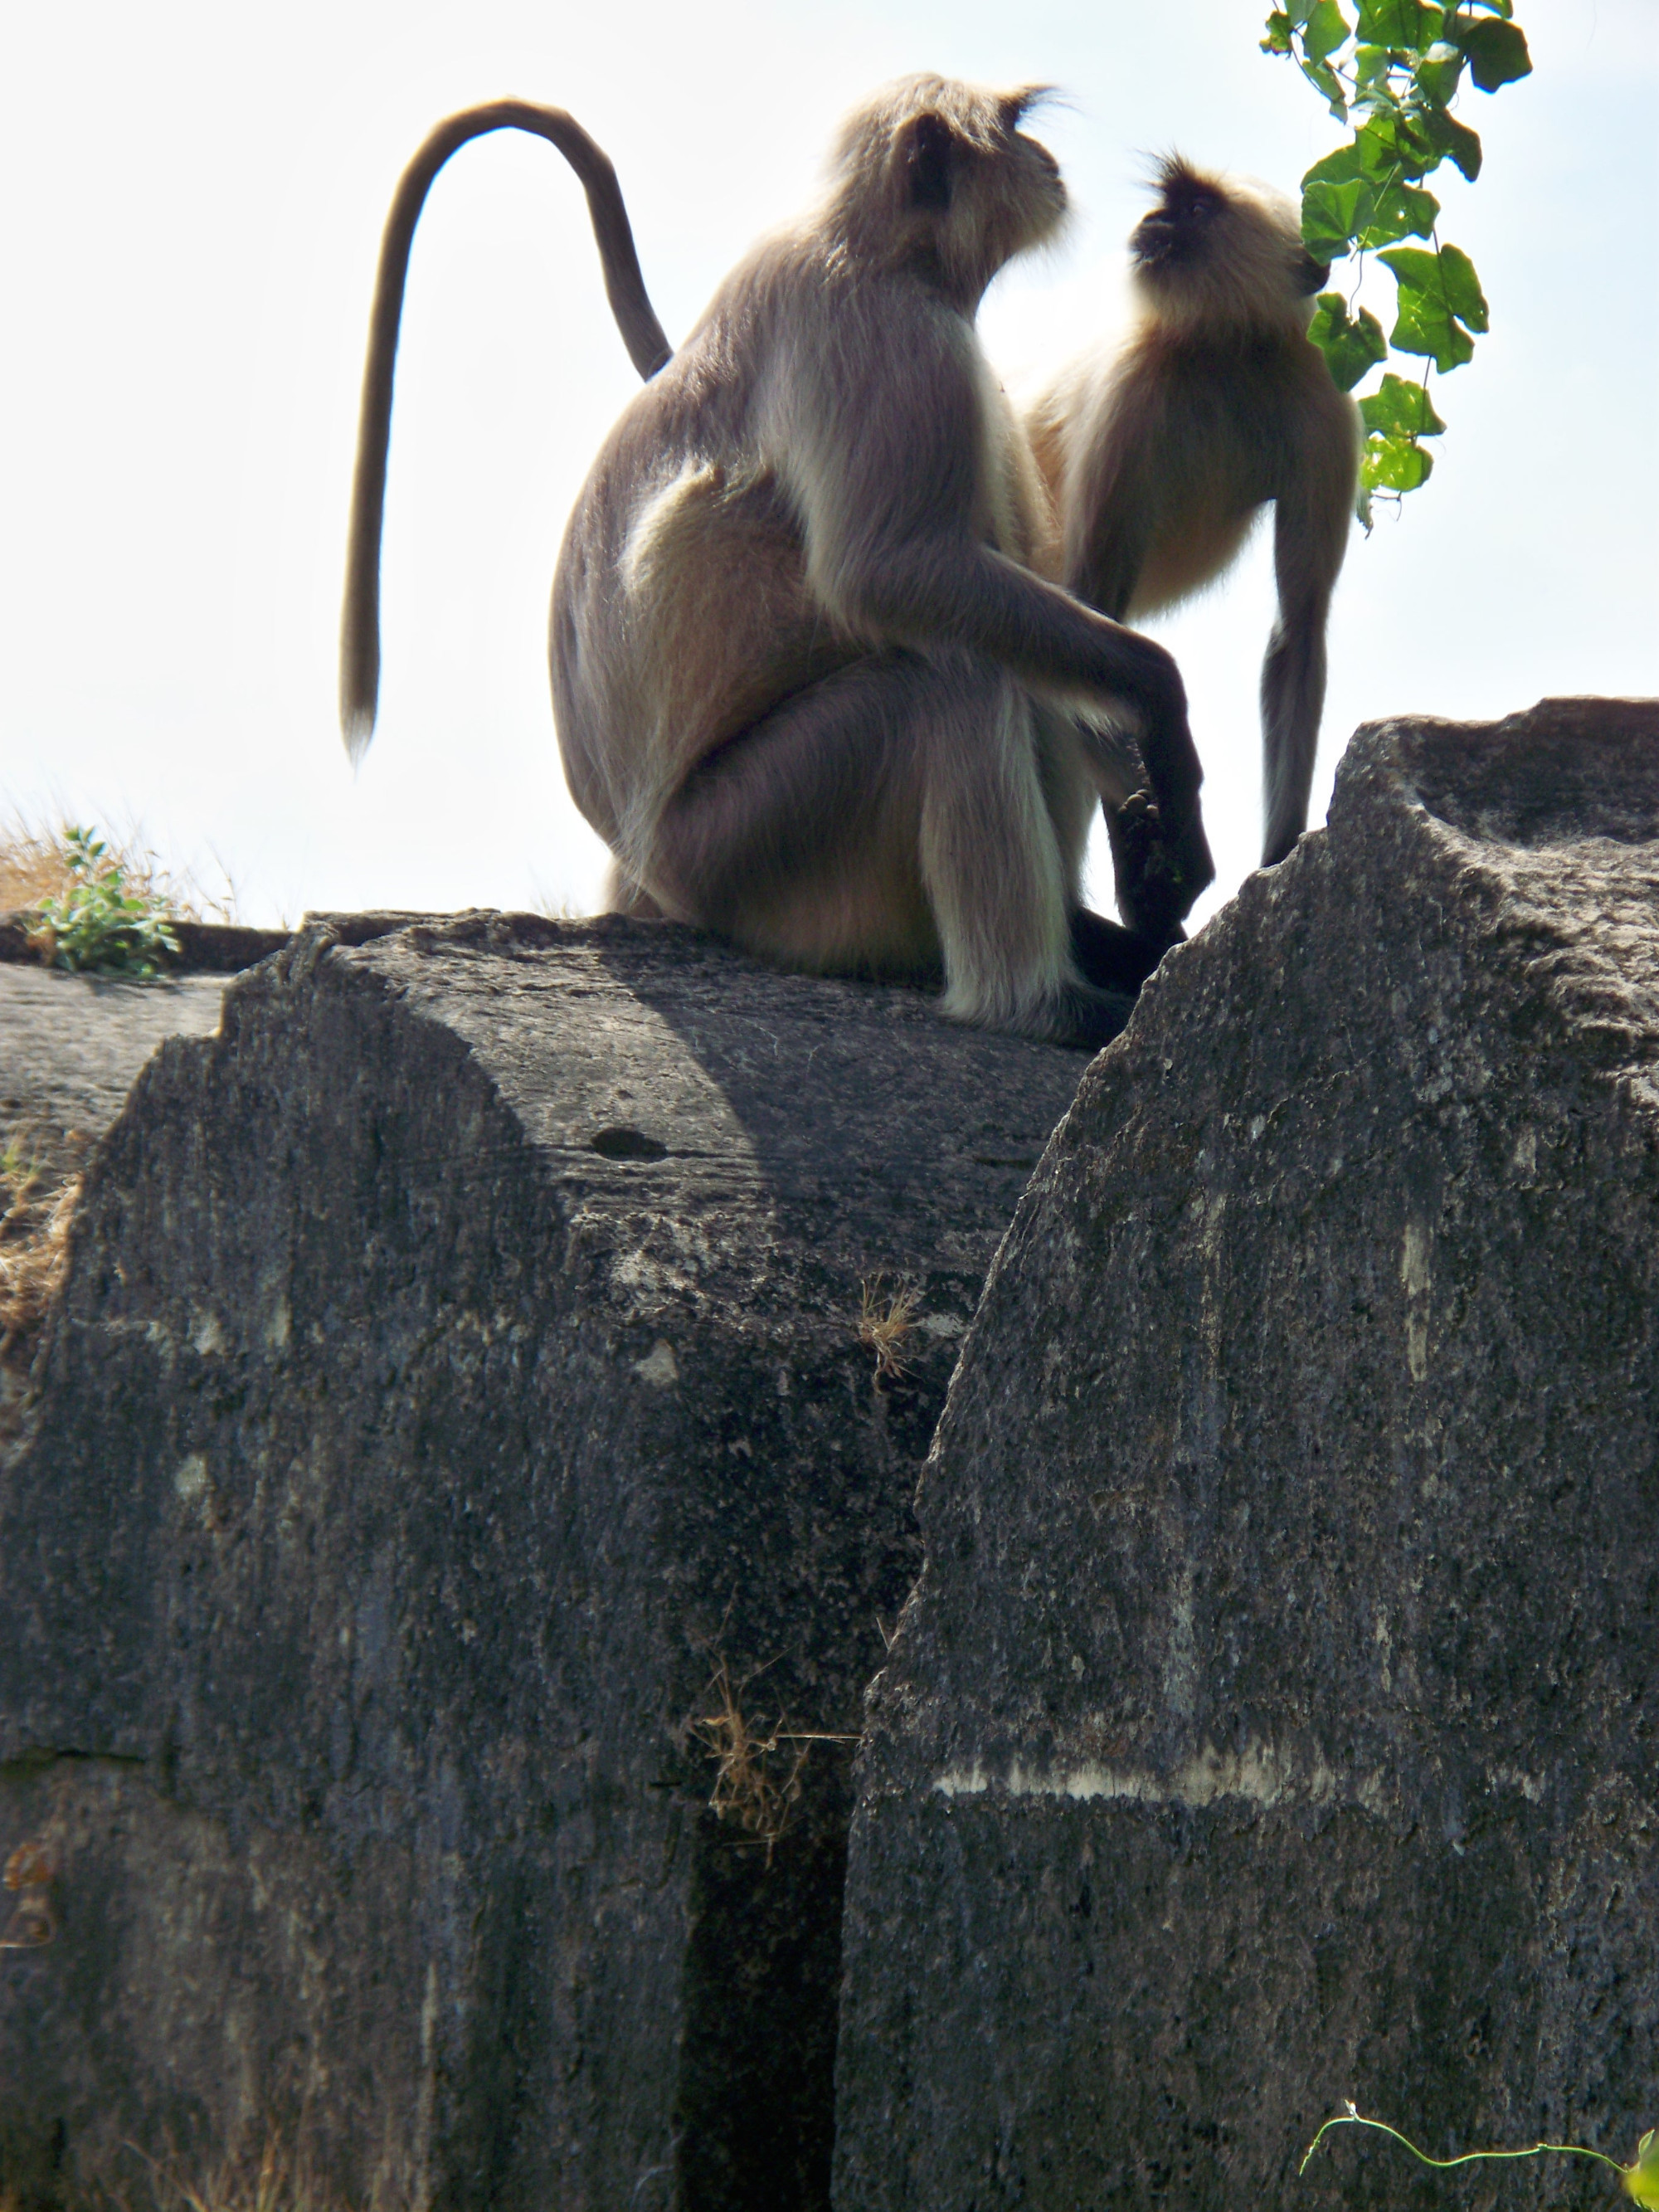 monkeys / Junagadh, Gujarat state, India